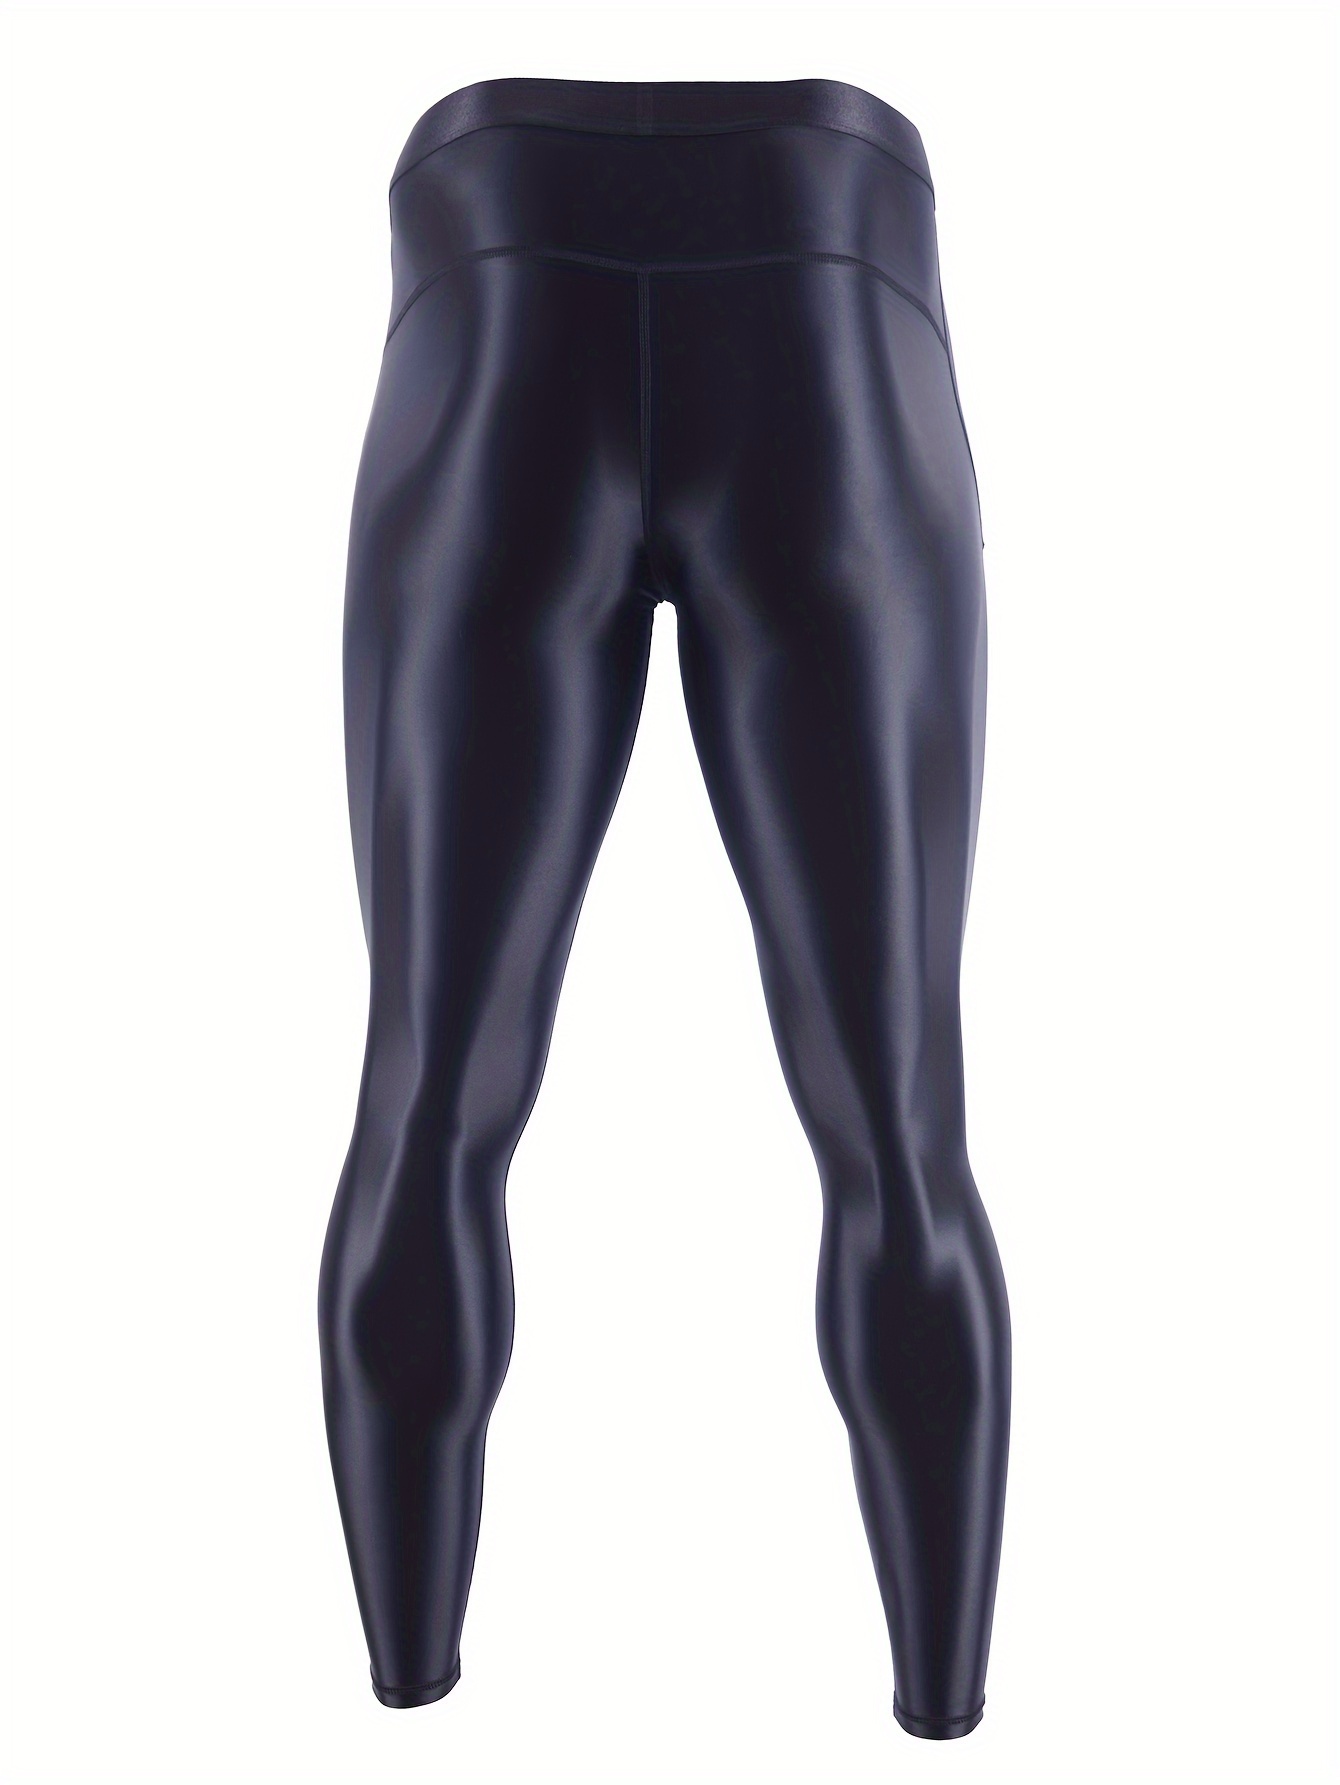 Leggins Athletic Black Shiny  Men \ Training wear \ Leggings